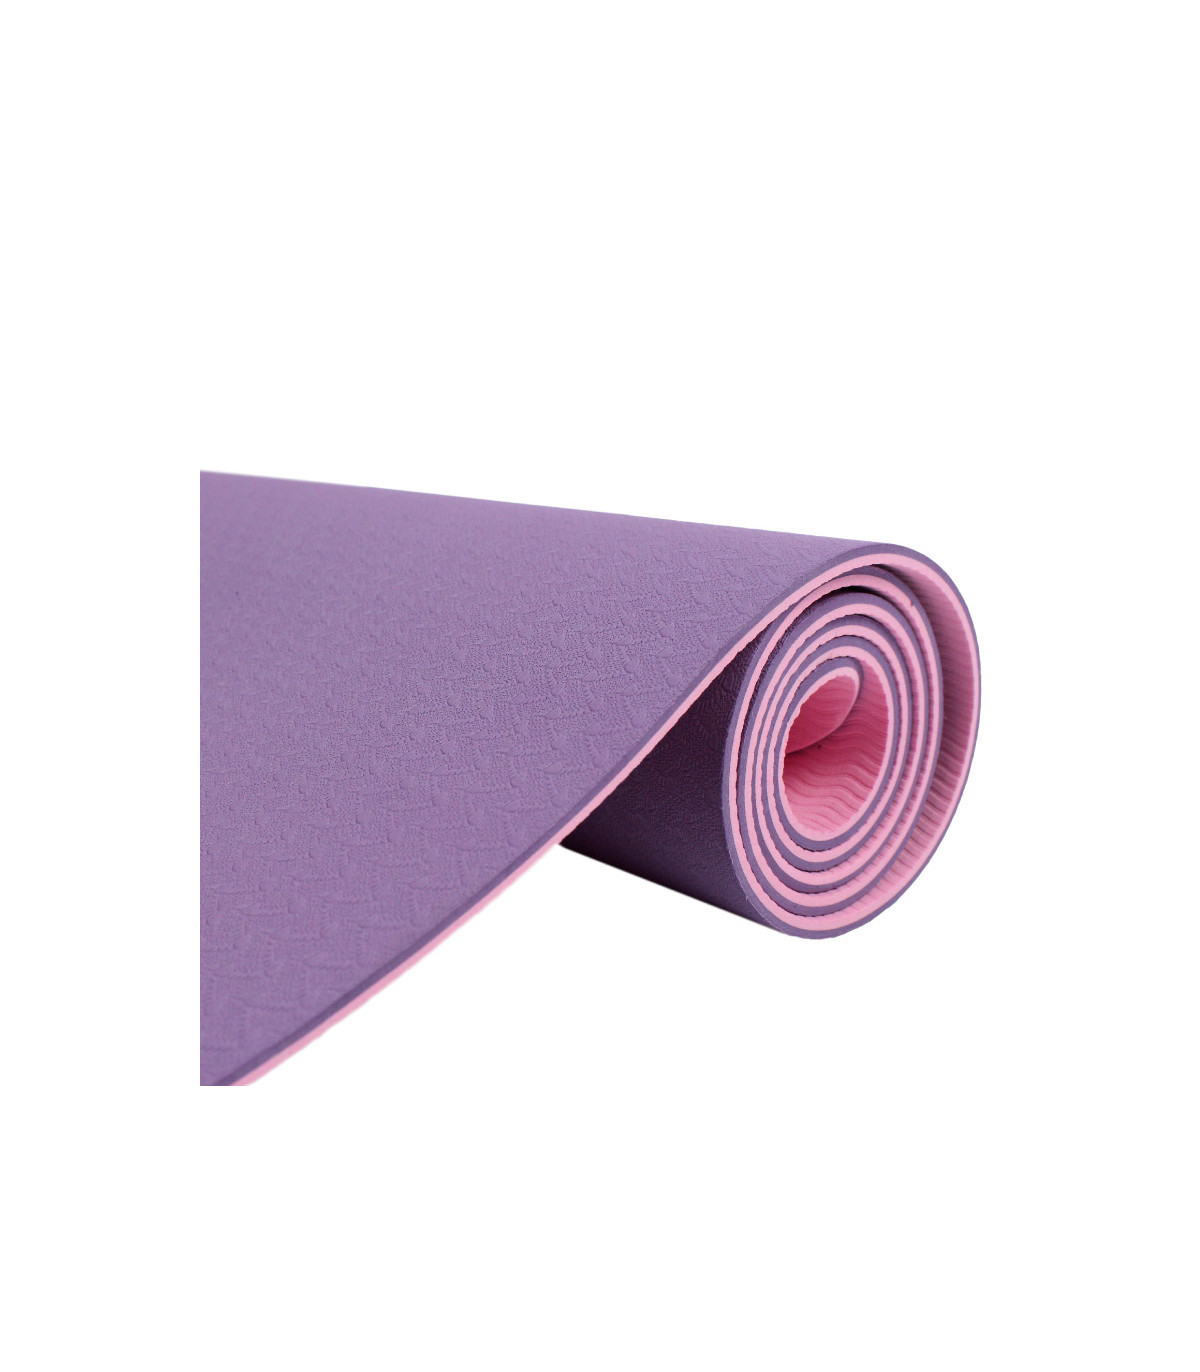 Esterilla Yoga Pilates antideslizante bicolor material ECO - RISCKO